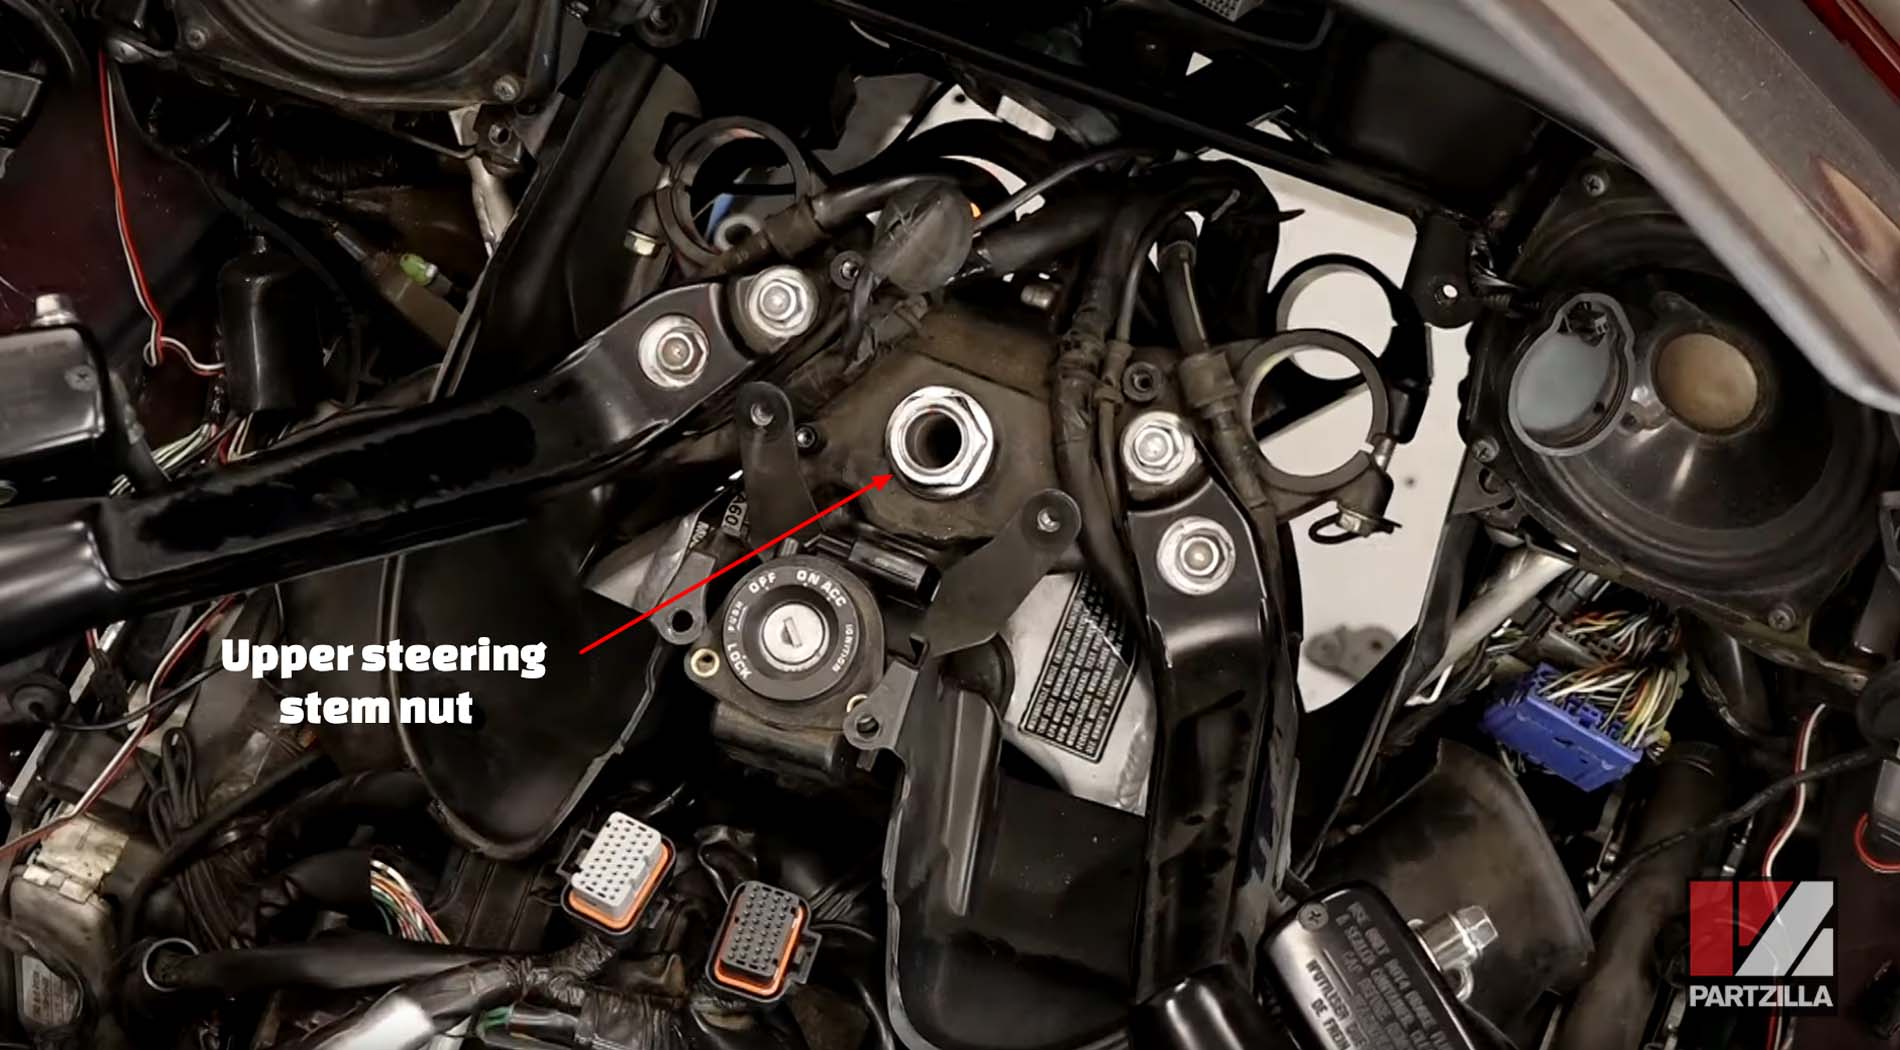 Honda Goldwing motorcycle steering bearing replacement